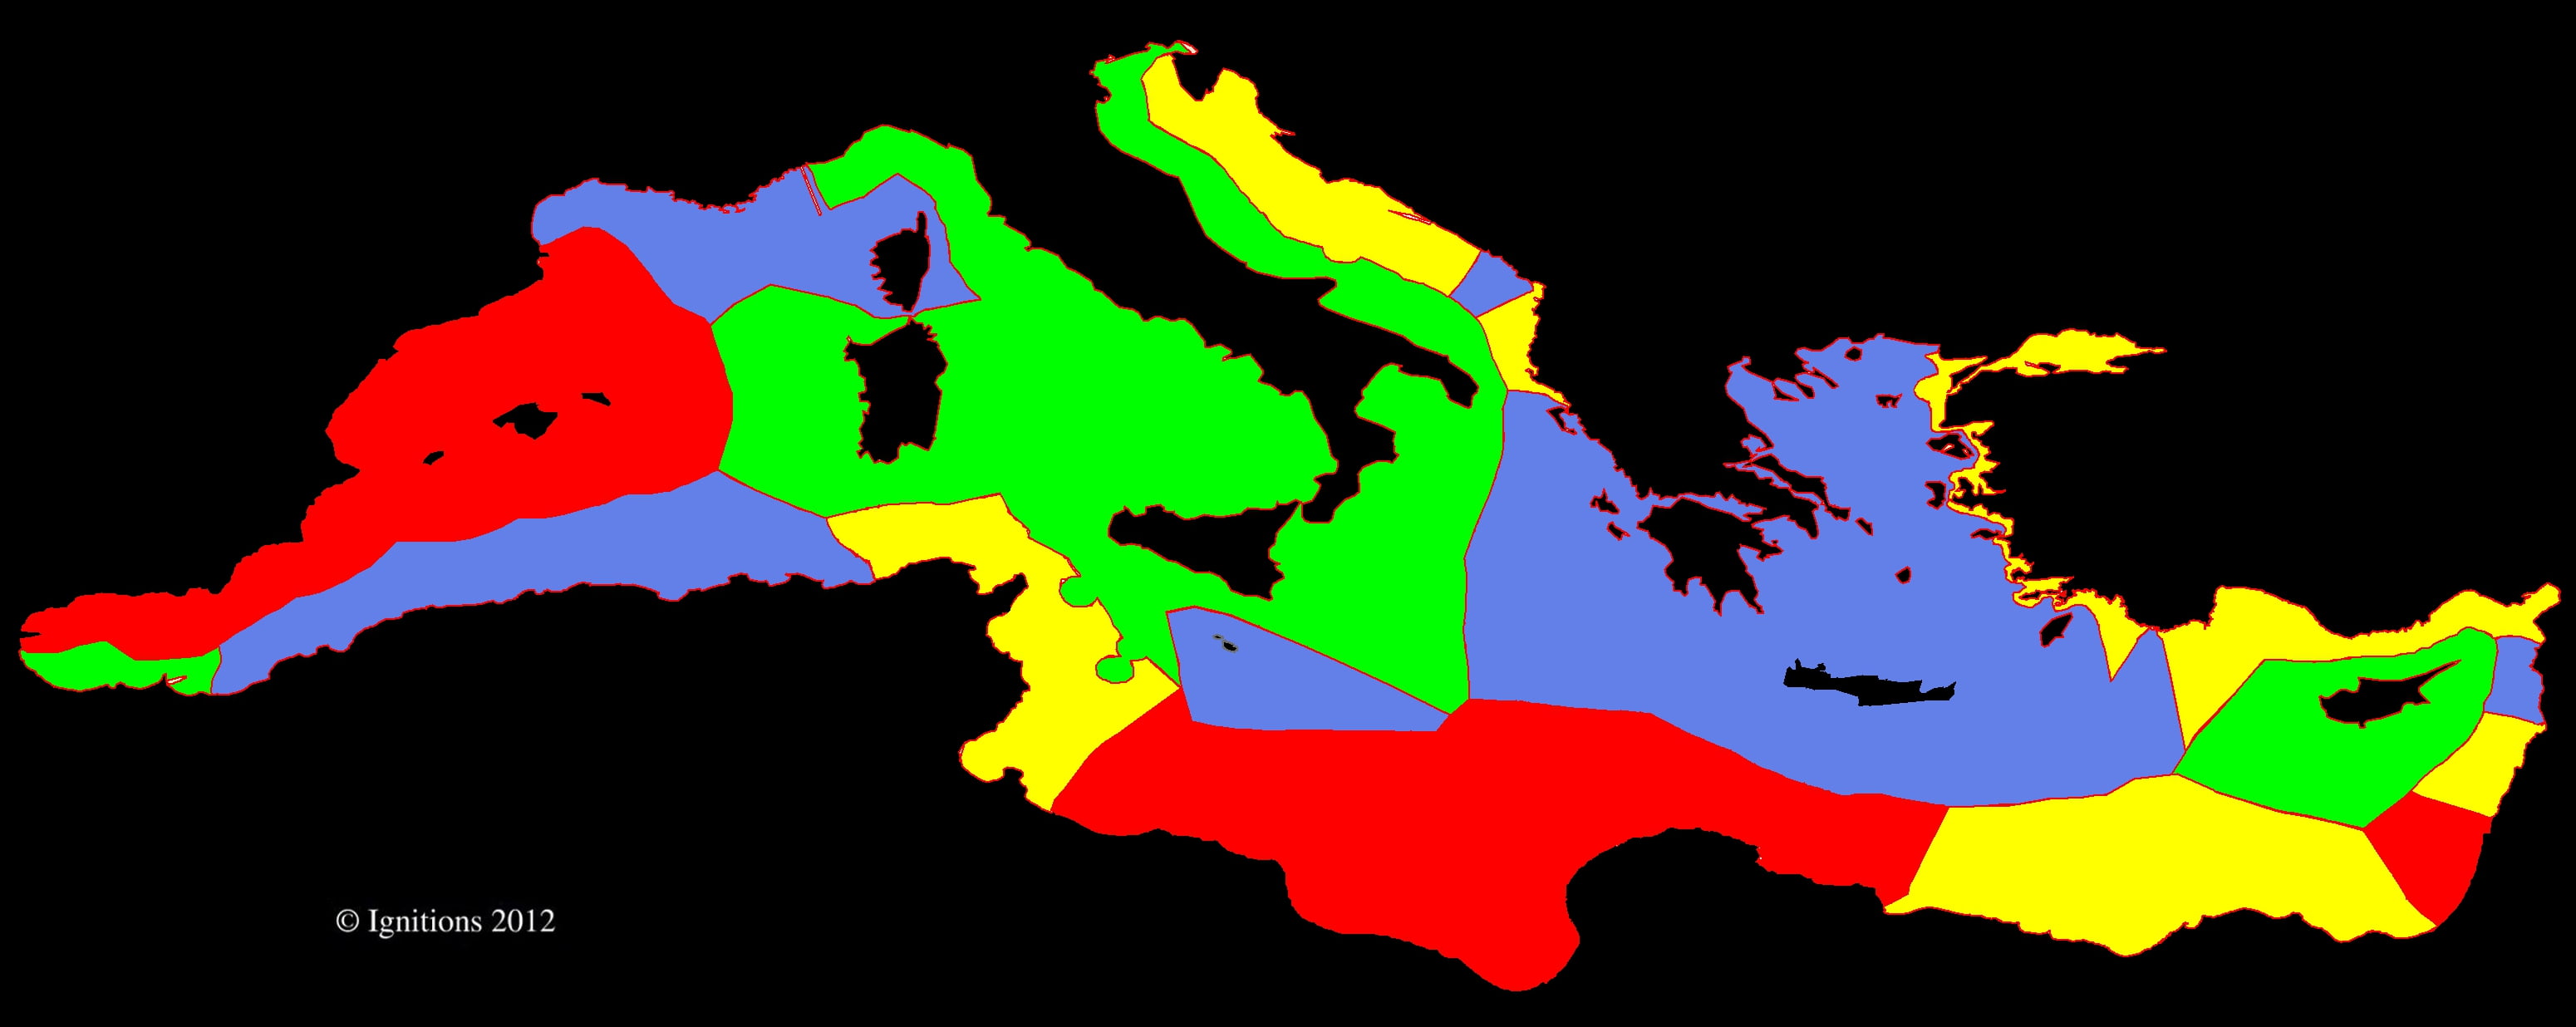 Η Πρώτη Κουρδική Εθνοσυνέλευση, η Κύπρος, το Καστελόριζο και η ΑΟΖ!